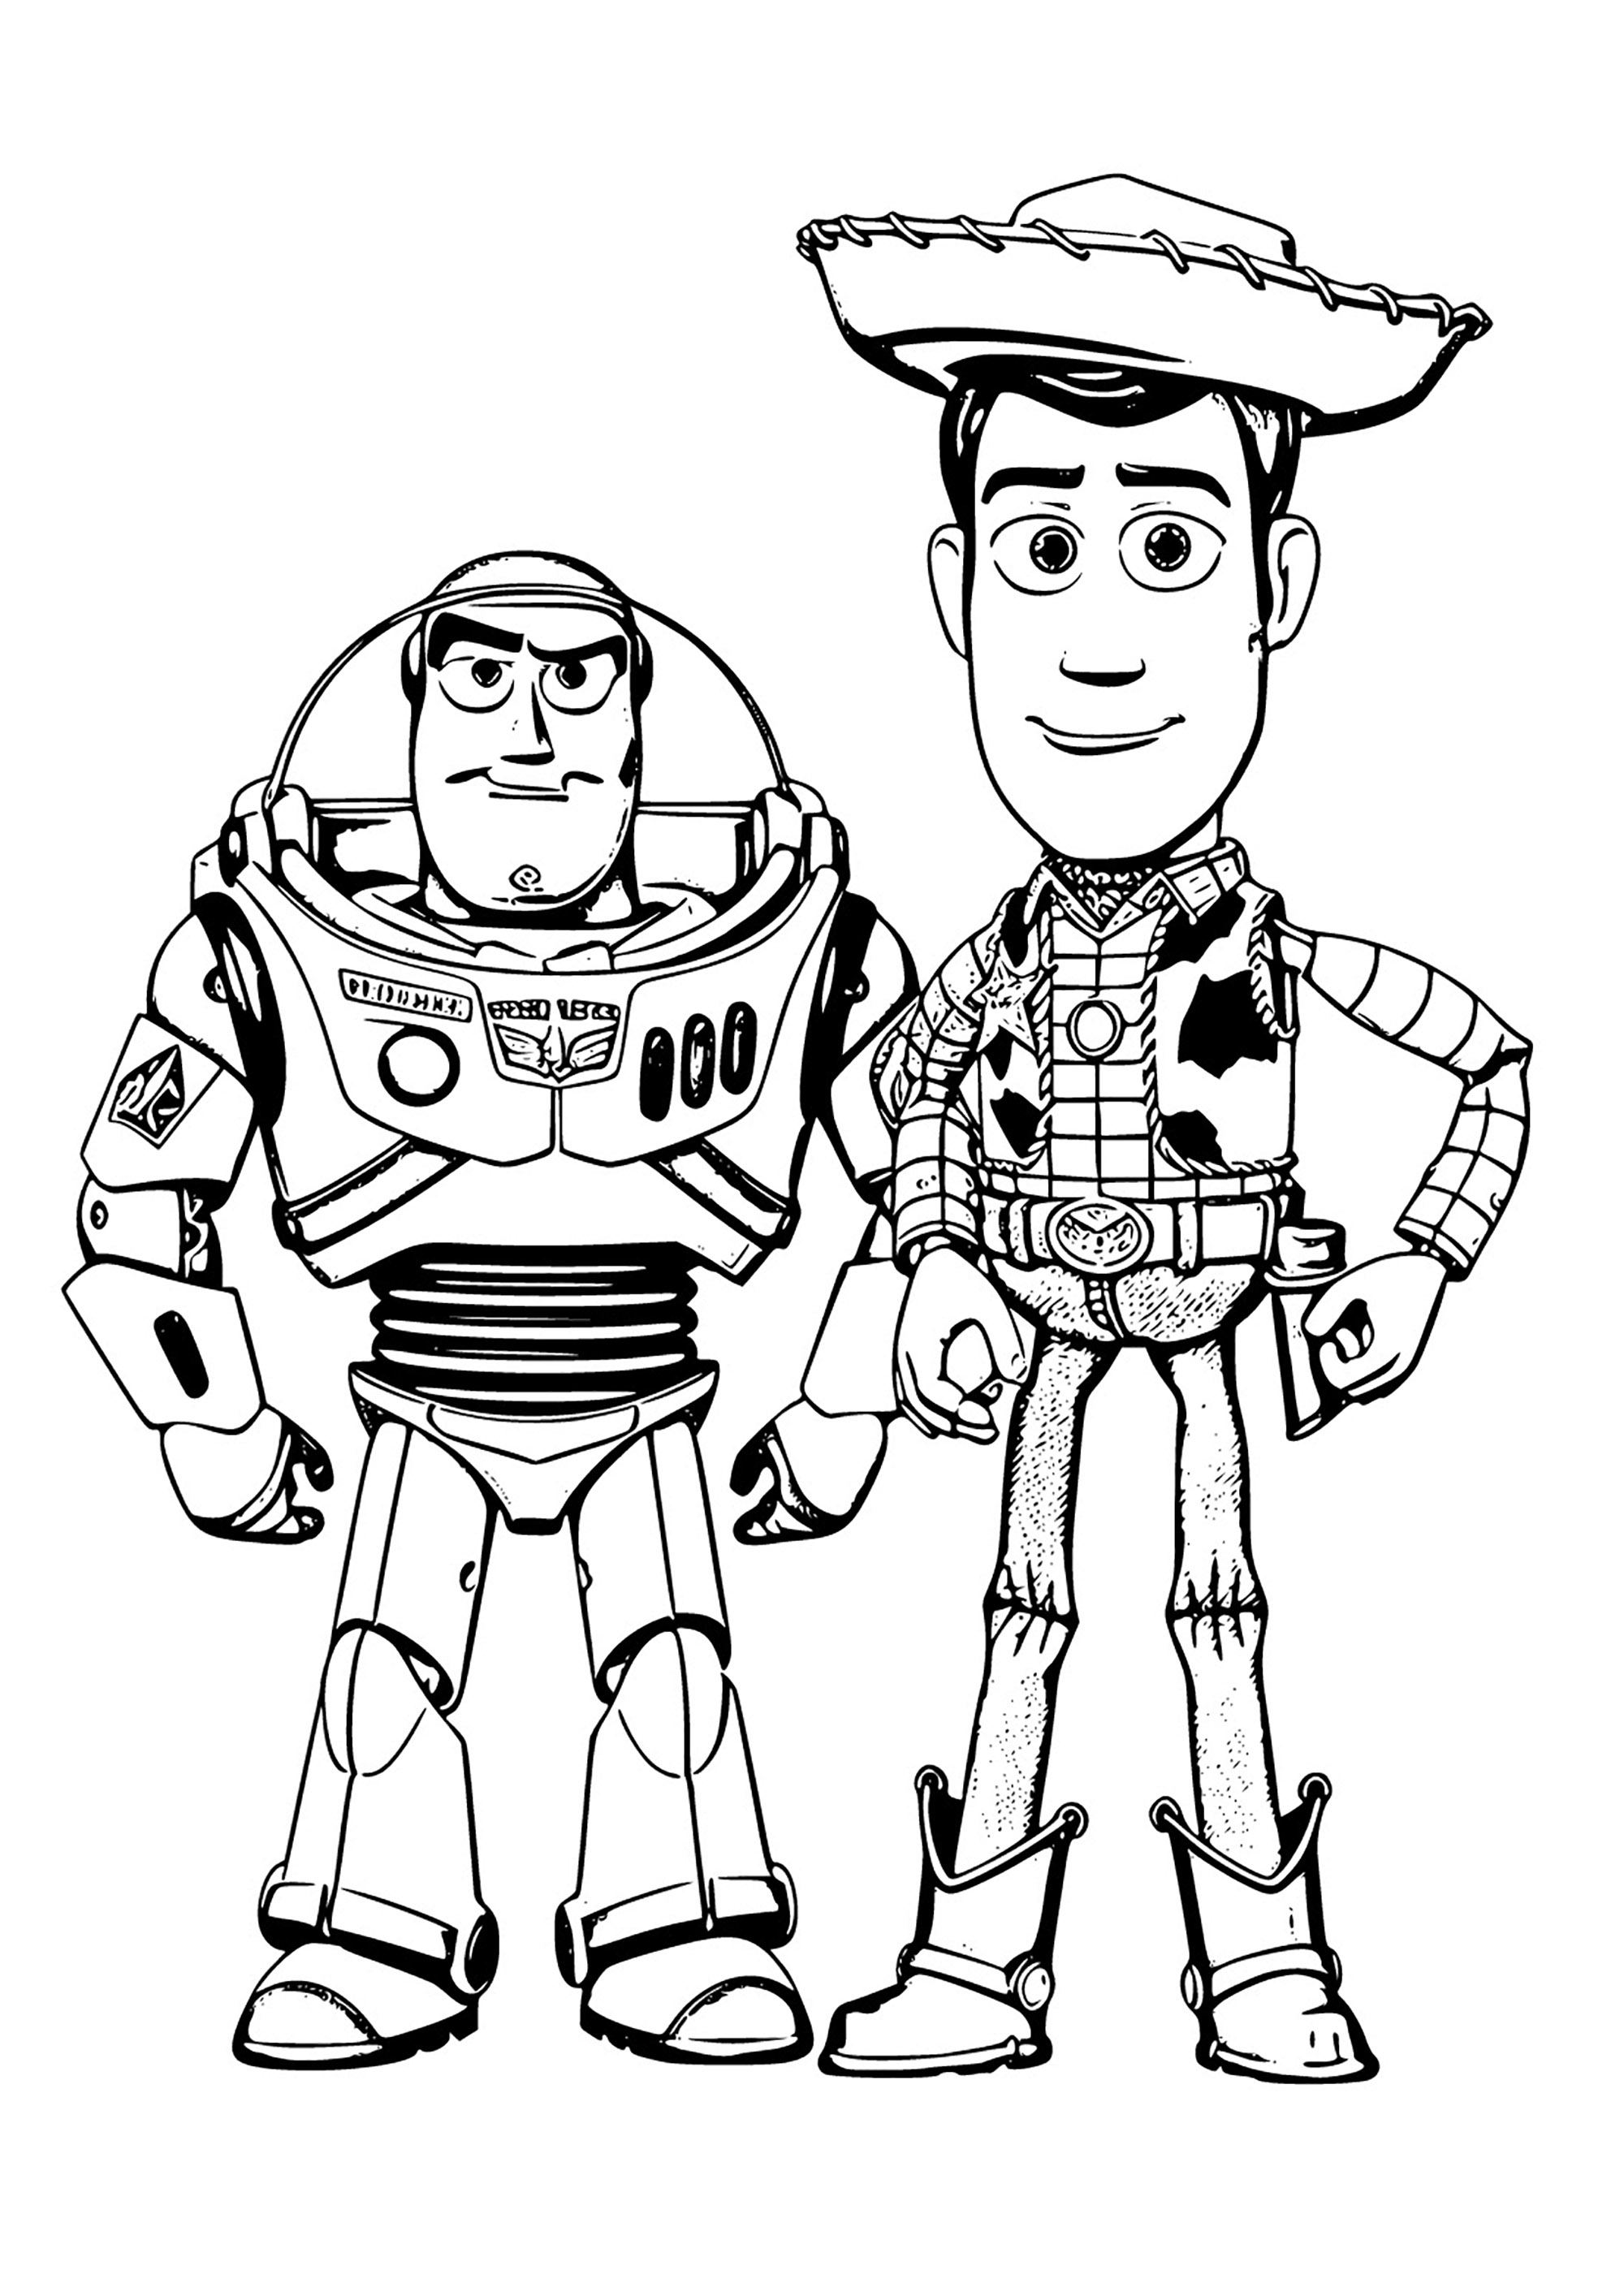 Joli dessin à colorier de Woody et Buzz. Un dessin au style très particulier, loin de la représentation 3D des films